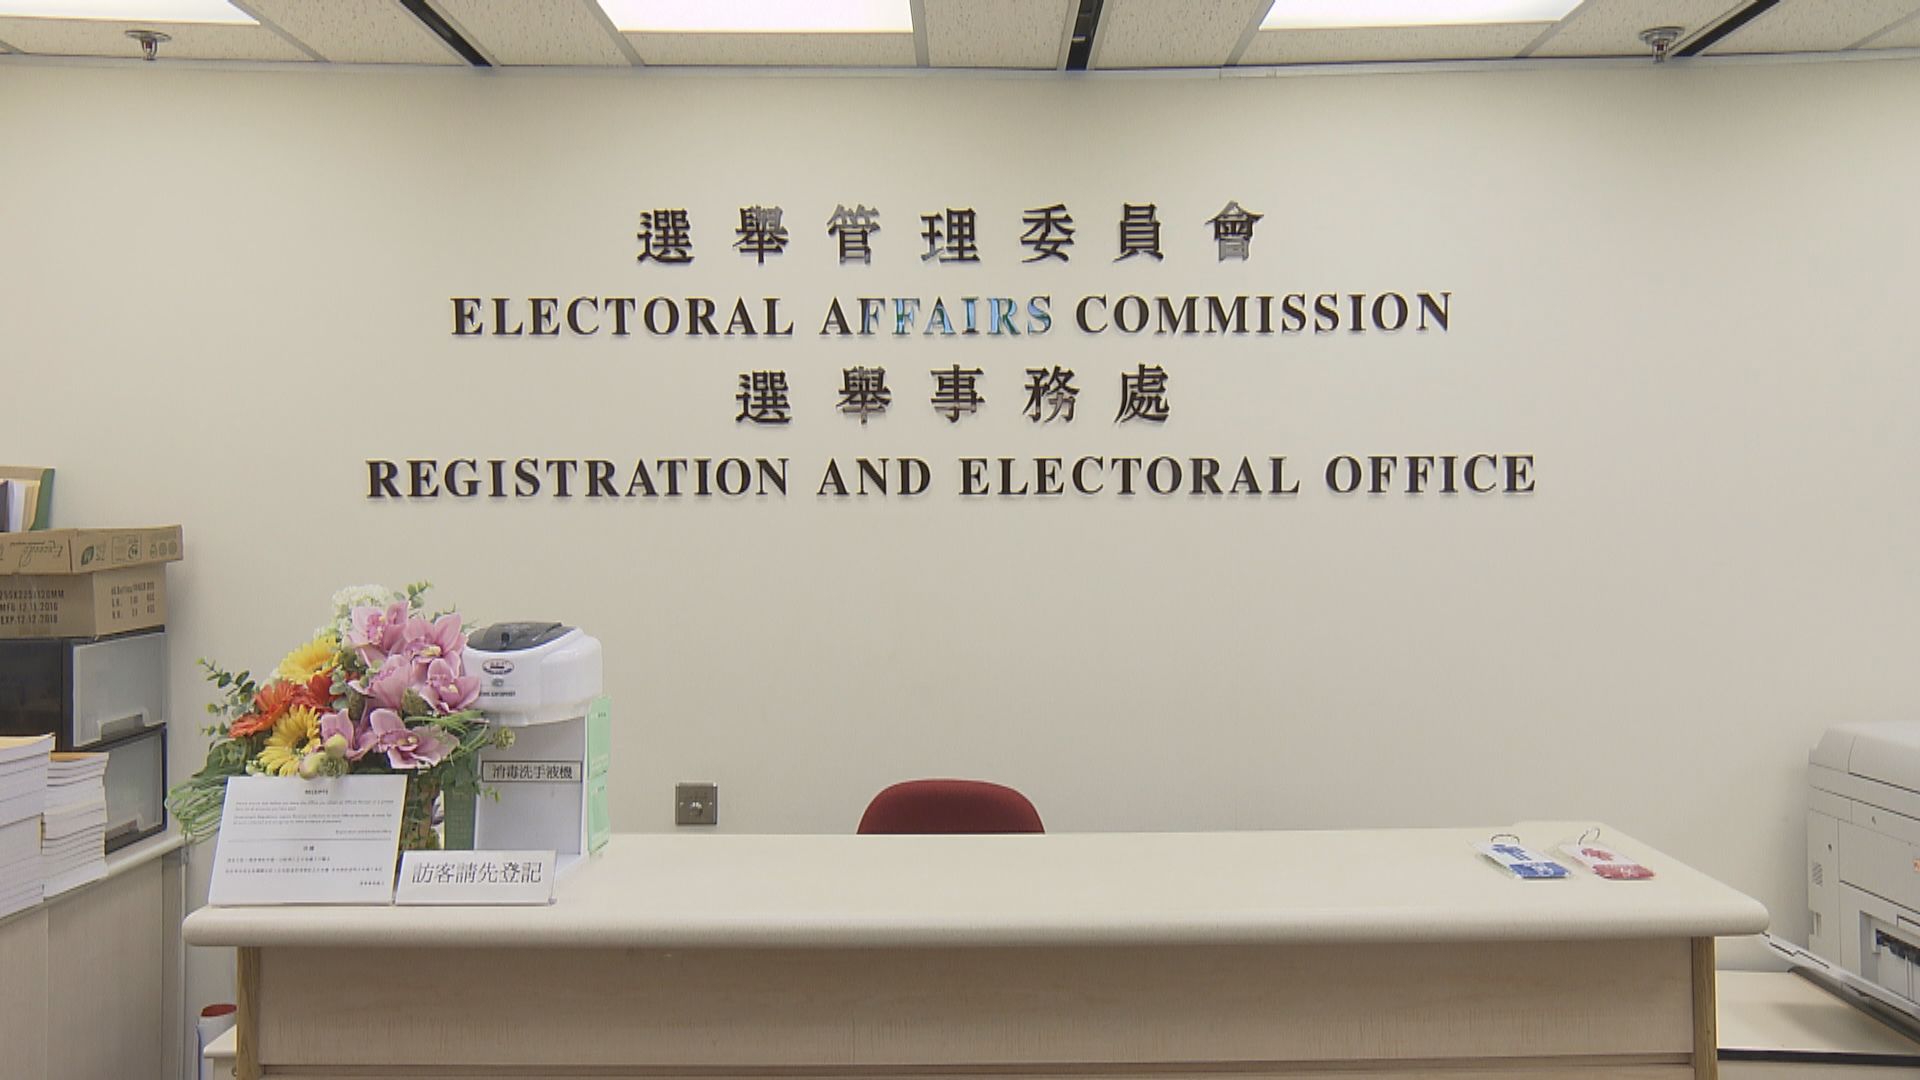 新界東南1.4萬選民被編錯投票站　選舉事務處致歉